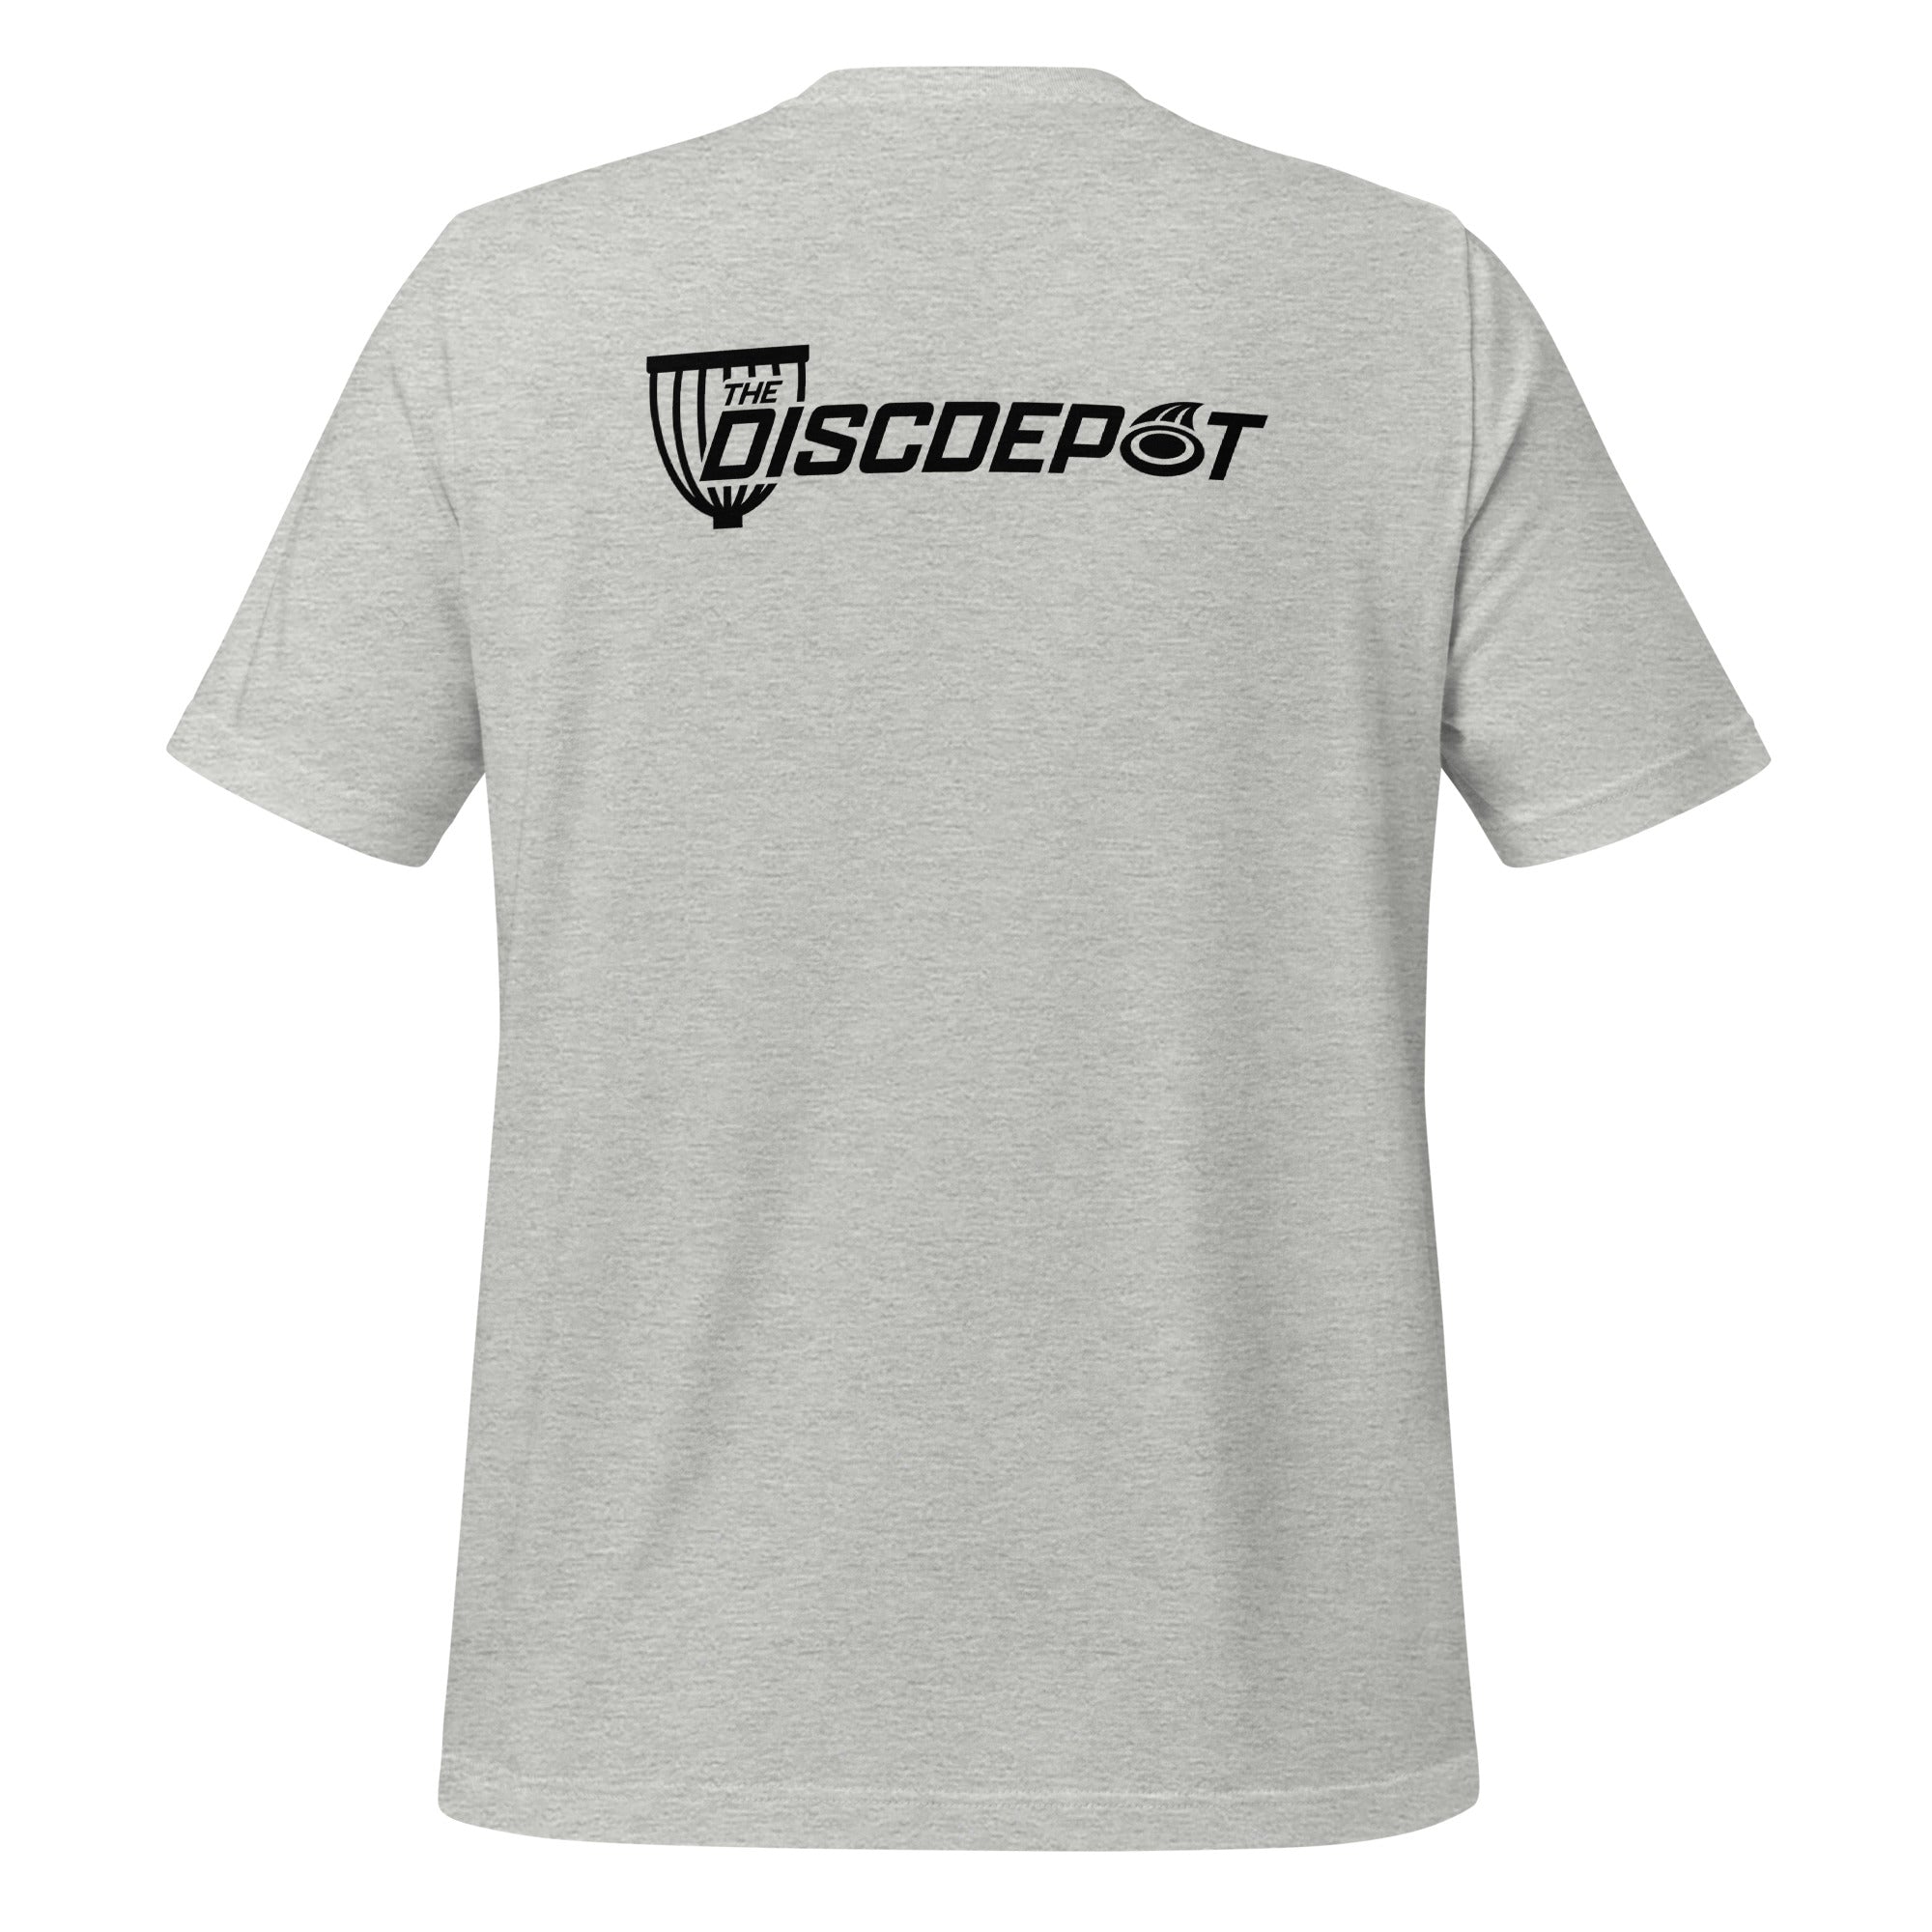 The Disc Depot Short Sleeve Unisex t-shirt-24